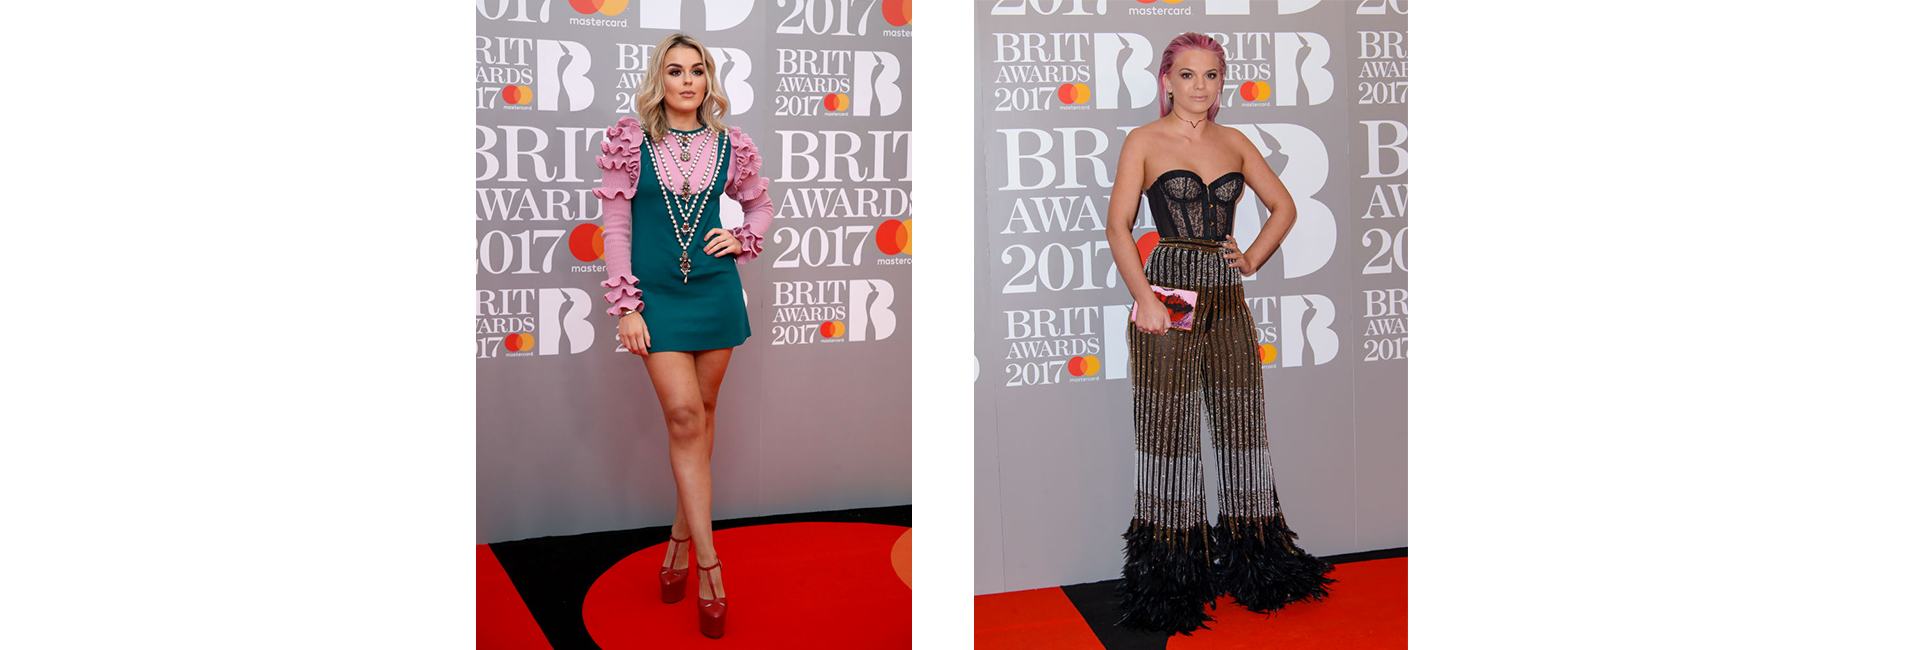 Brit Awards 2017: итоги церемонии и гости вечера (фото 8)